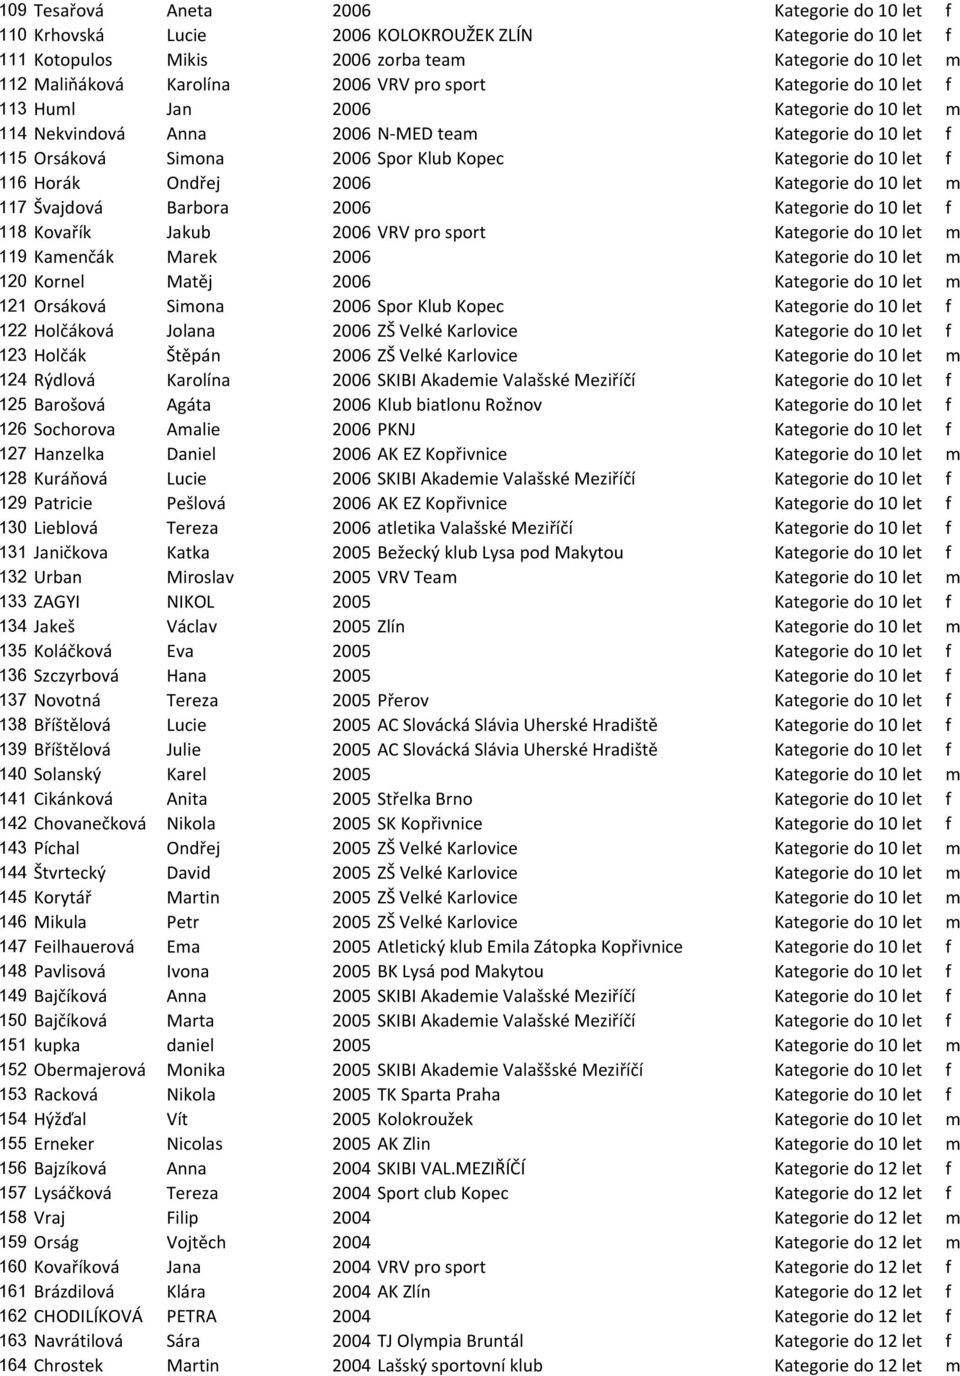 Horák Ondřej 2006 Kategorie do 10 let m 117 Švajdová Barbora 2006 Kategorie do 10 let f 118 Kovařík Jakub 2006 VRV pro sport Kategorie do 10 let m 119 Kamenčák Marek 2006 Kategorie do 10 let m 120